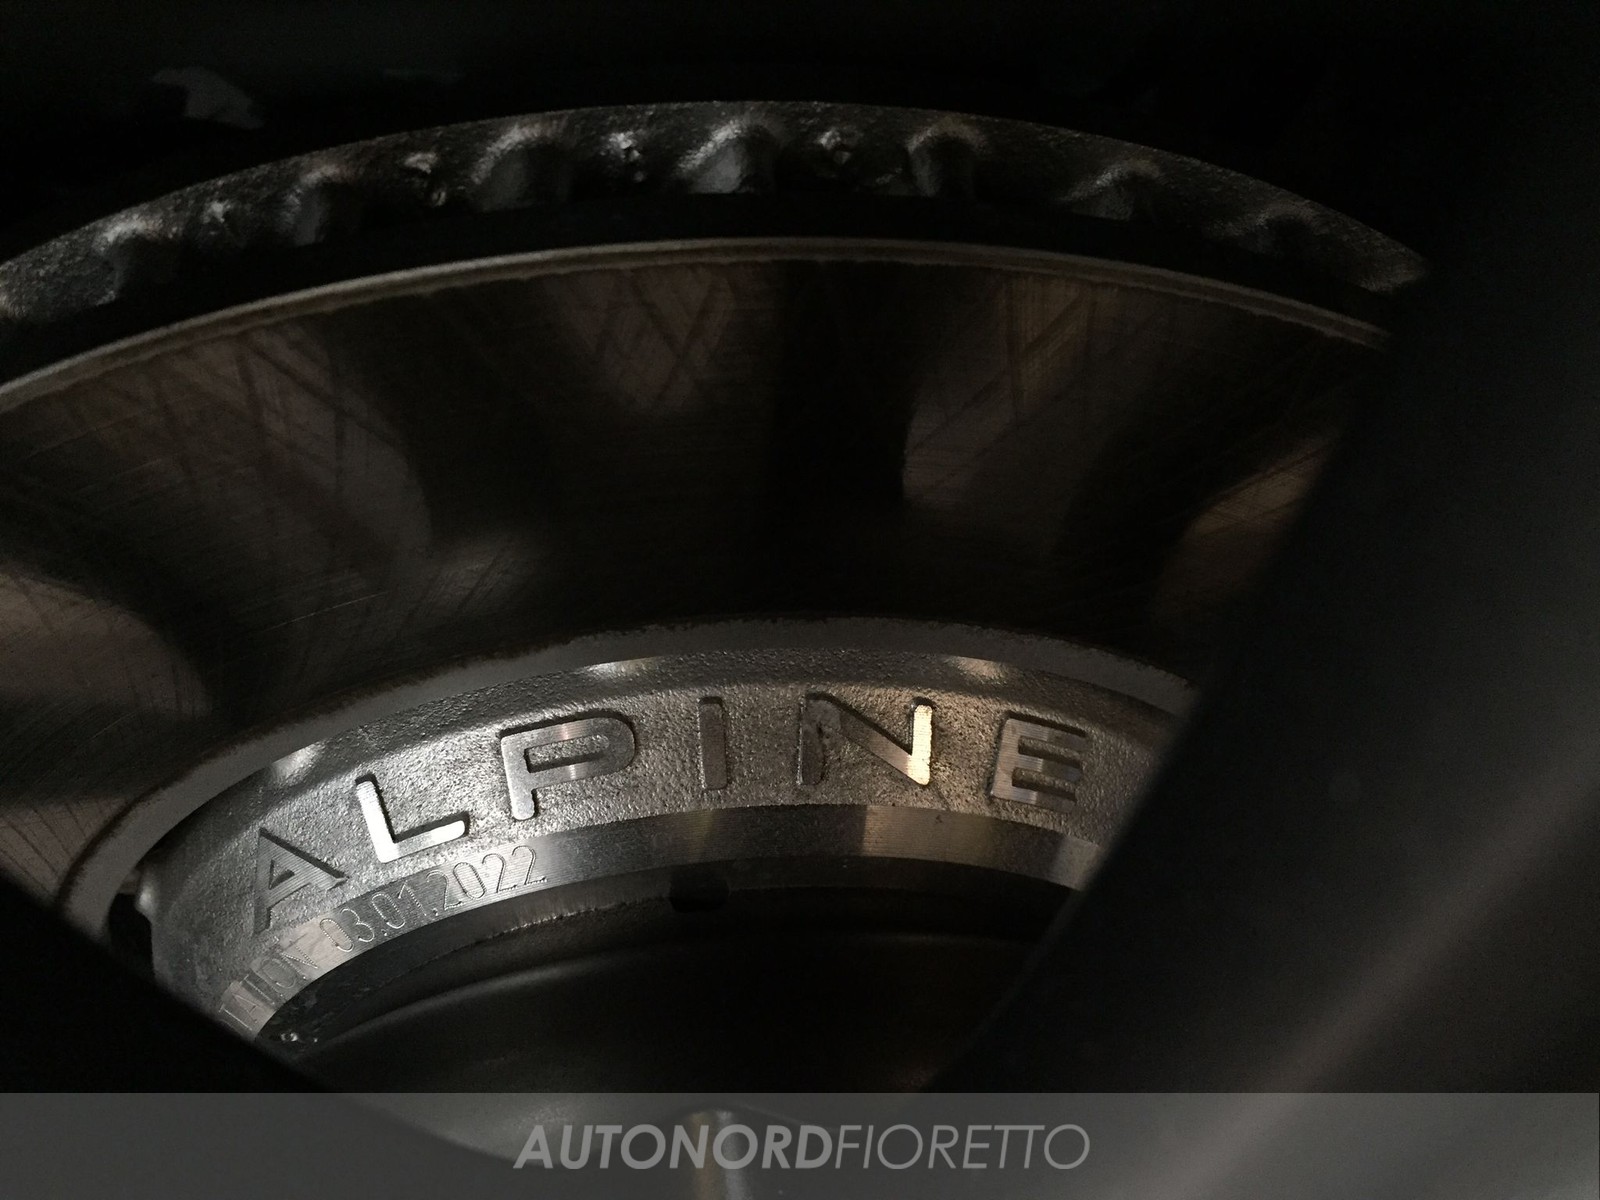 AUTONORD Alpine A110 S